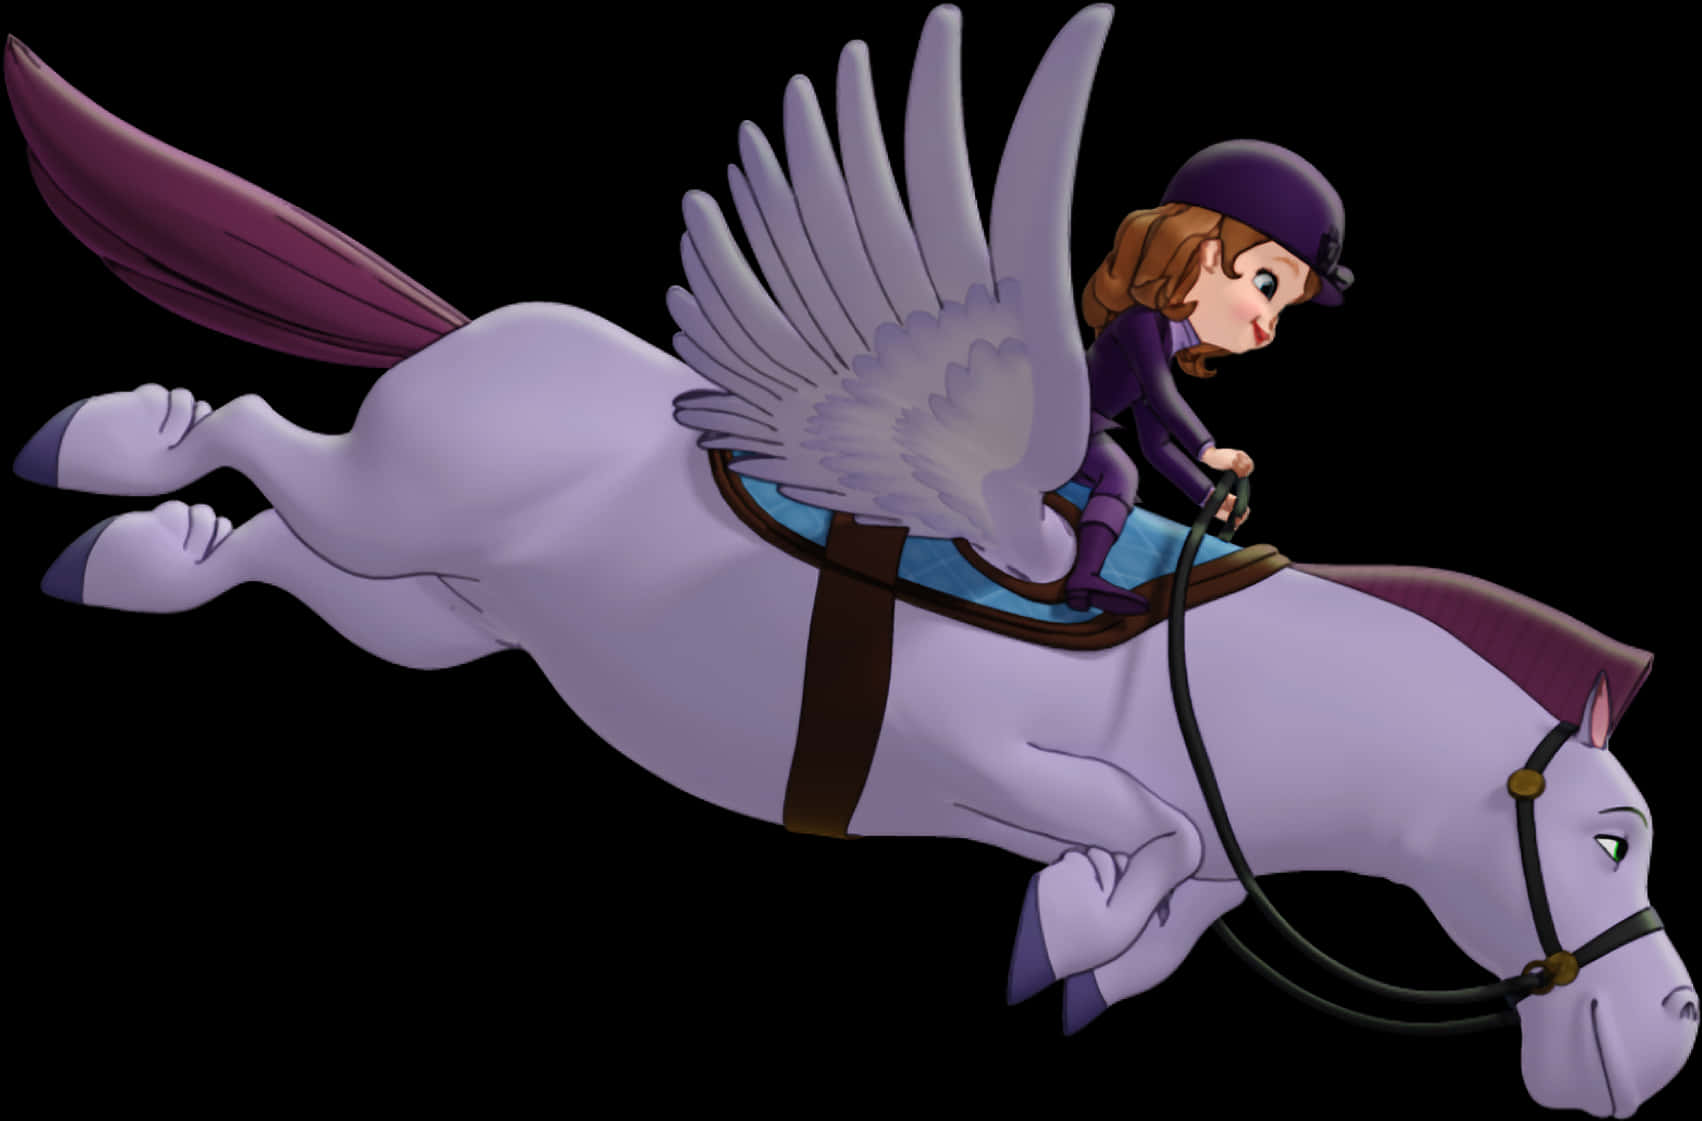 A Cartoon Of A Girl Riding A Horse